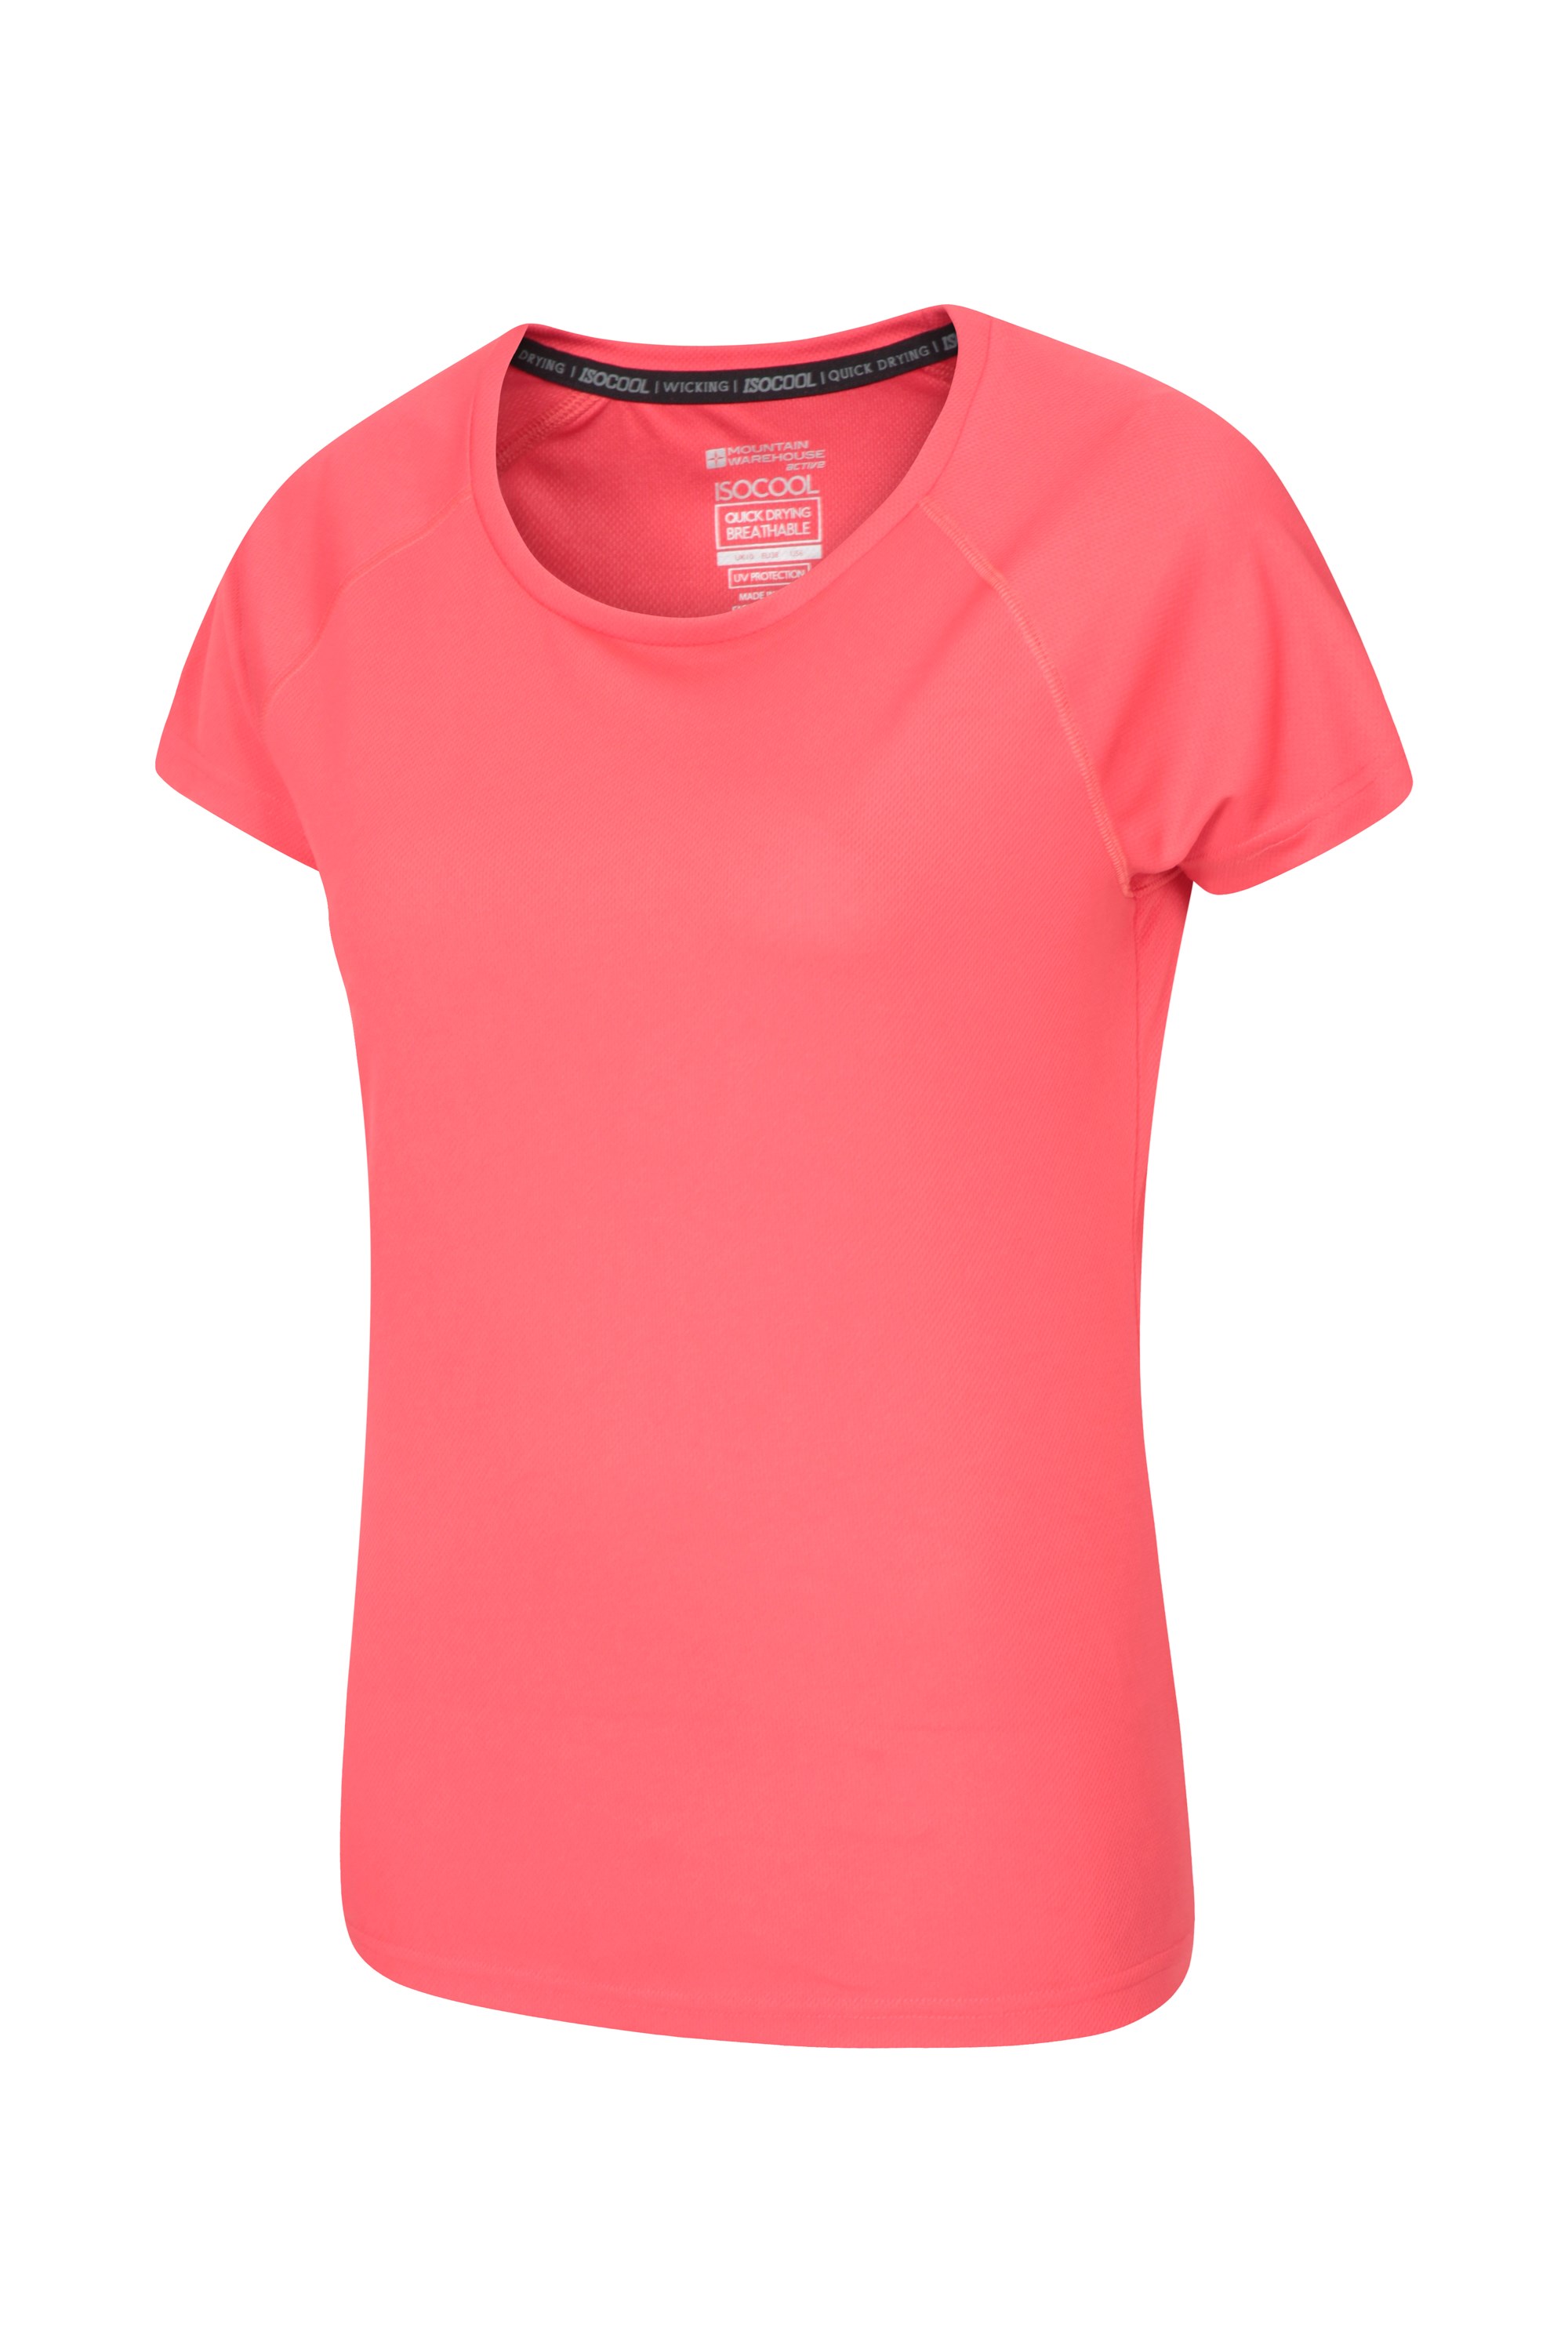 course à pied et quotidien Séchage rapide Protection UV Longues manches Mountain Warehouse T-shirt d’été Endurance pour femme Léger Pour voyages 